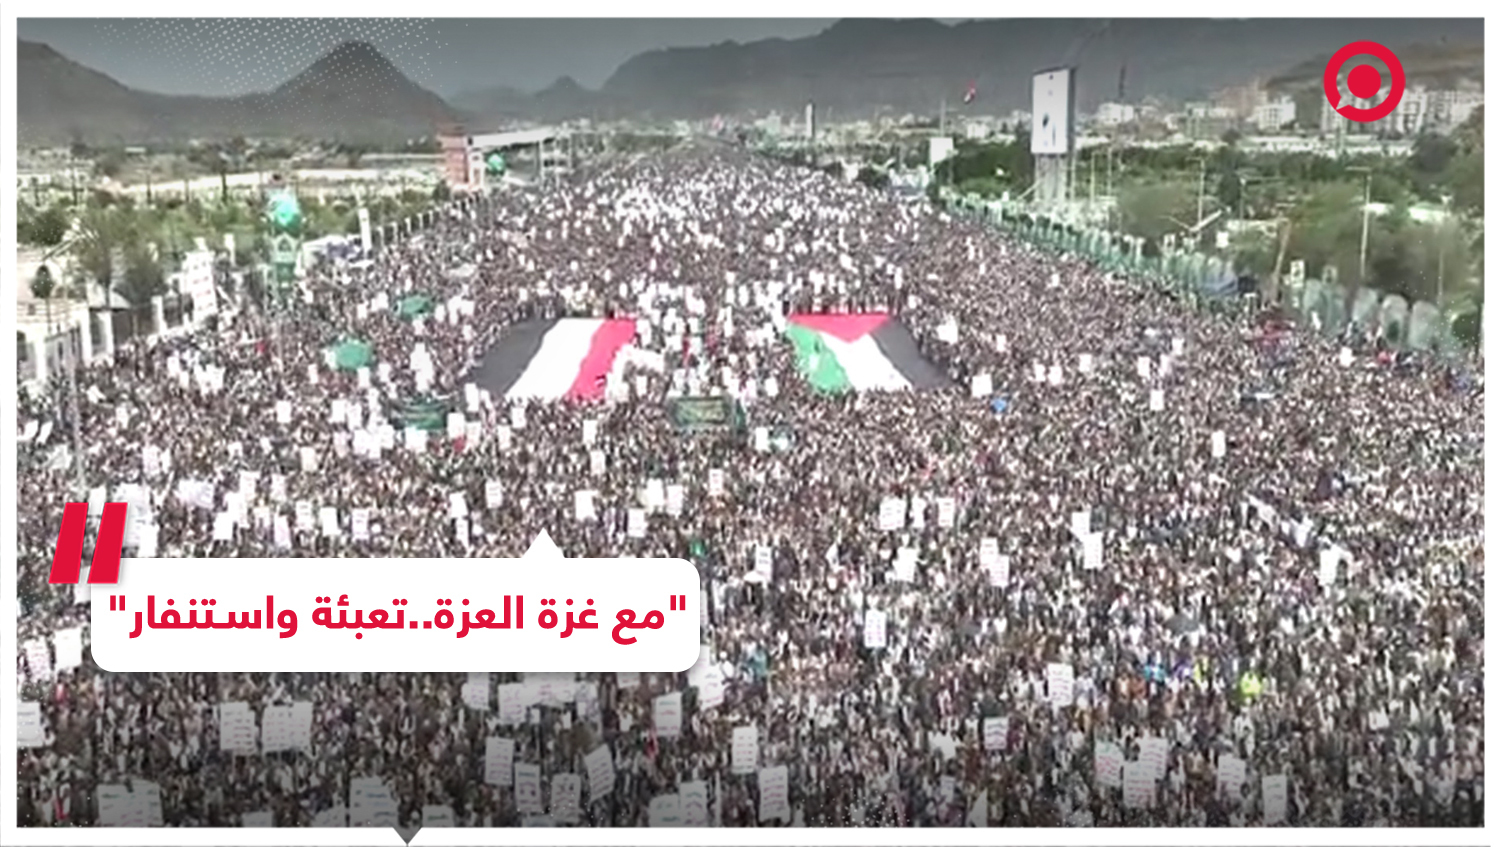 مظاهرة مليونية تحت شعار "مع غزة العزة.. تعبئة واستنفار" في العاصمة اليمنية صنعاء